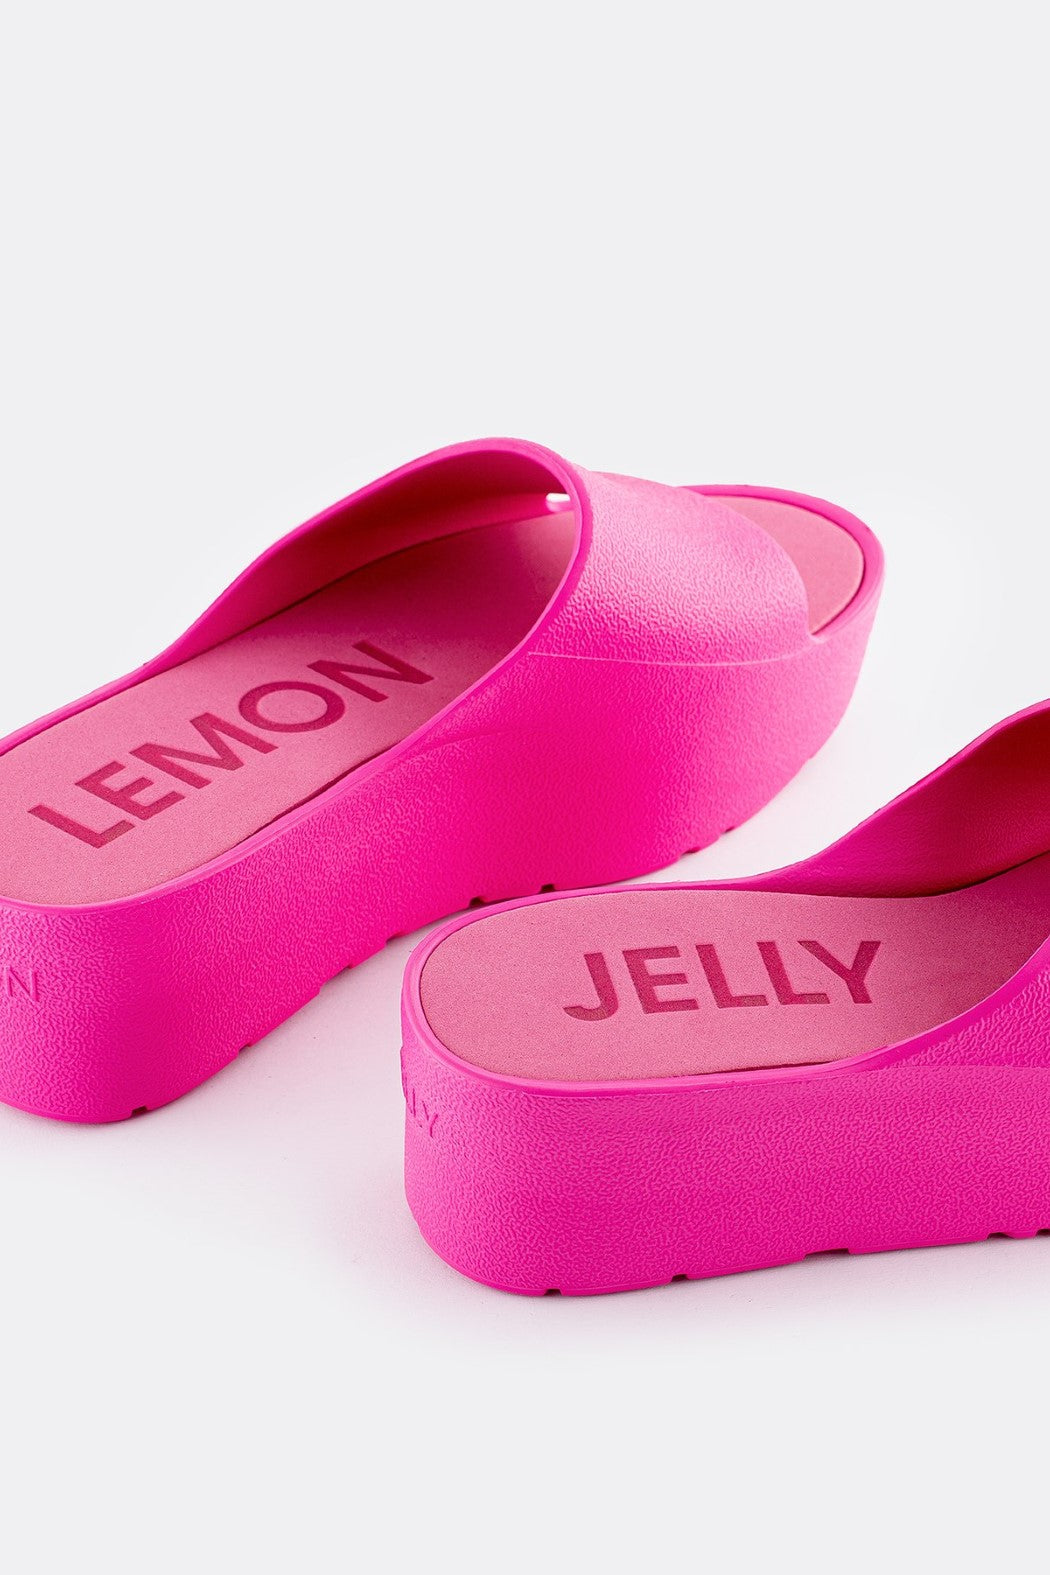 Sunny Sandals - Fuschia | Lemon Jelly - Clearance